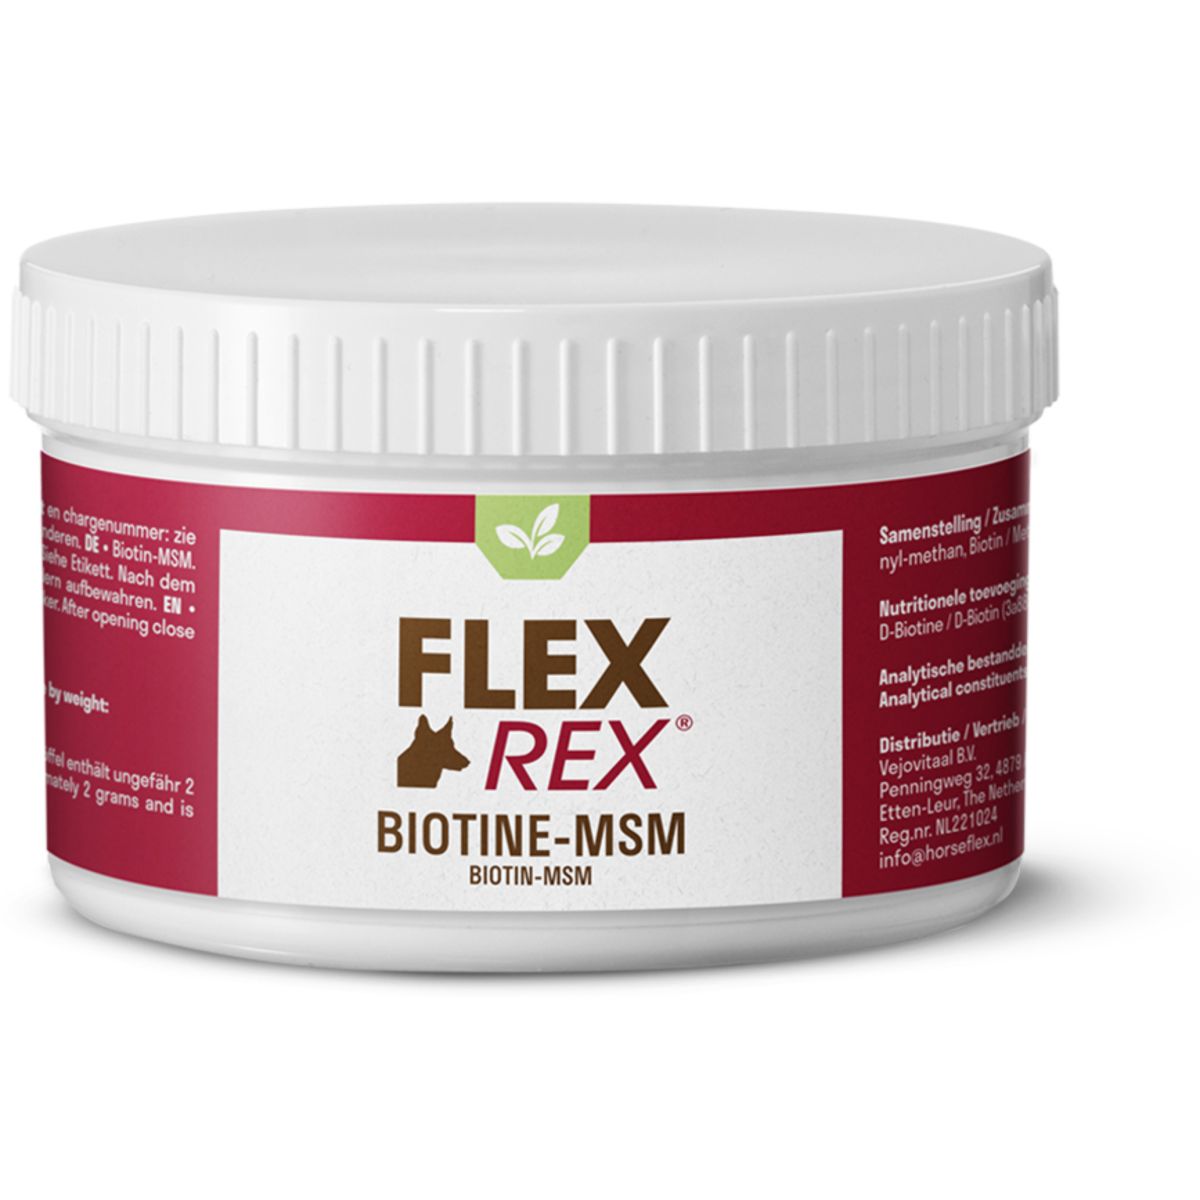 Flexrex Biotine-MSM